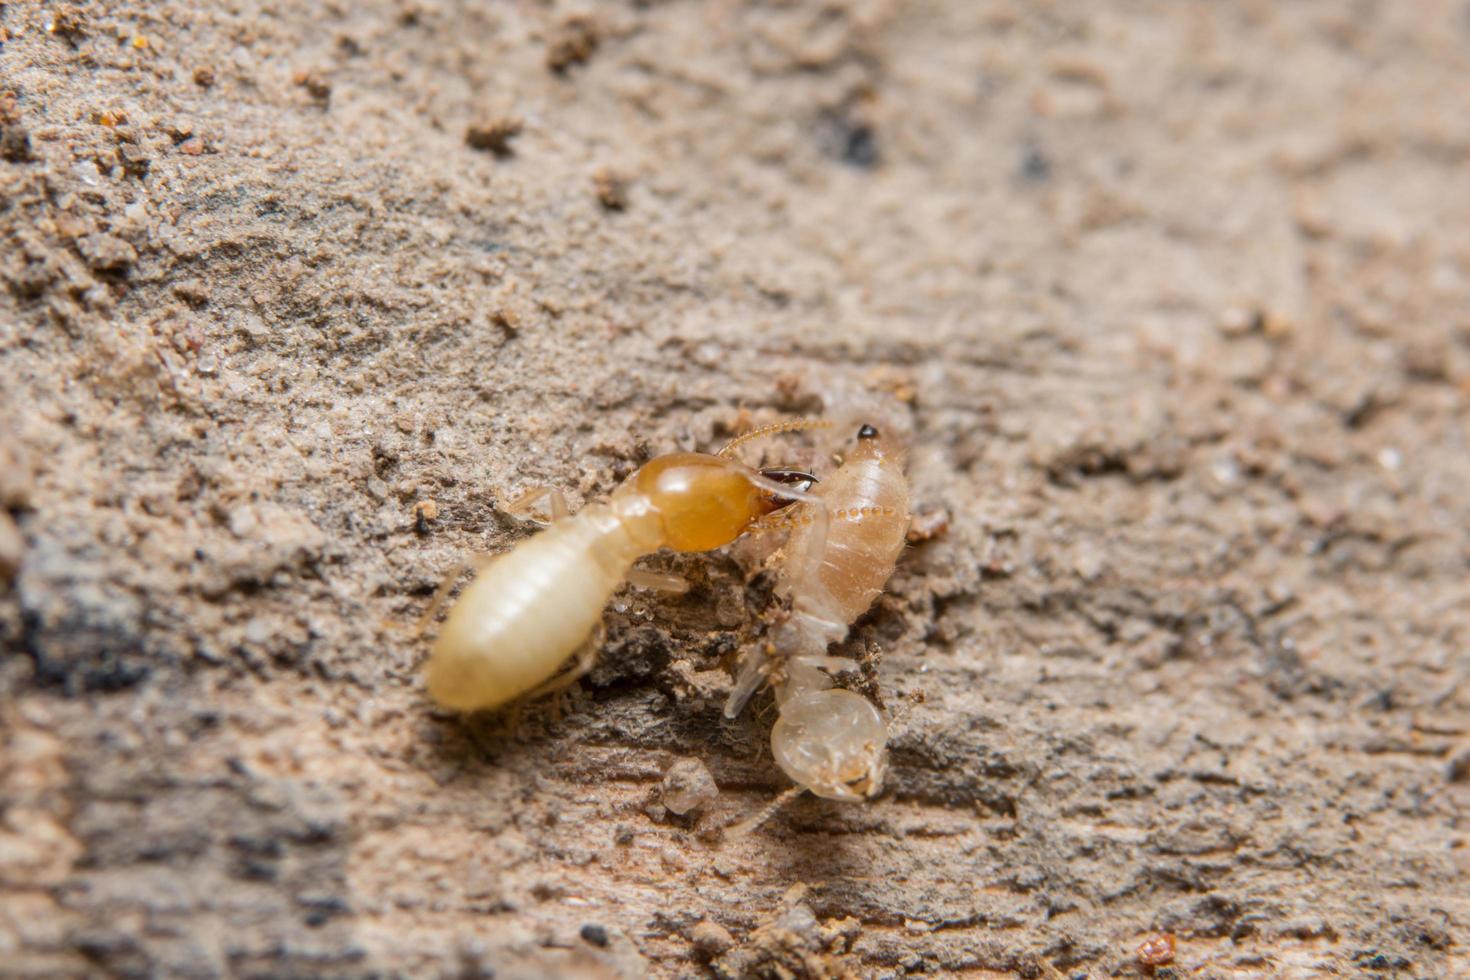 termiti, foto in primo piano